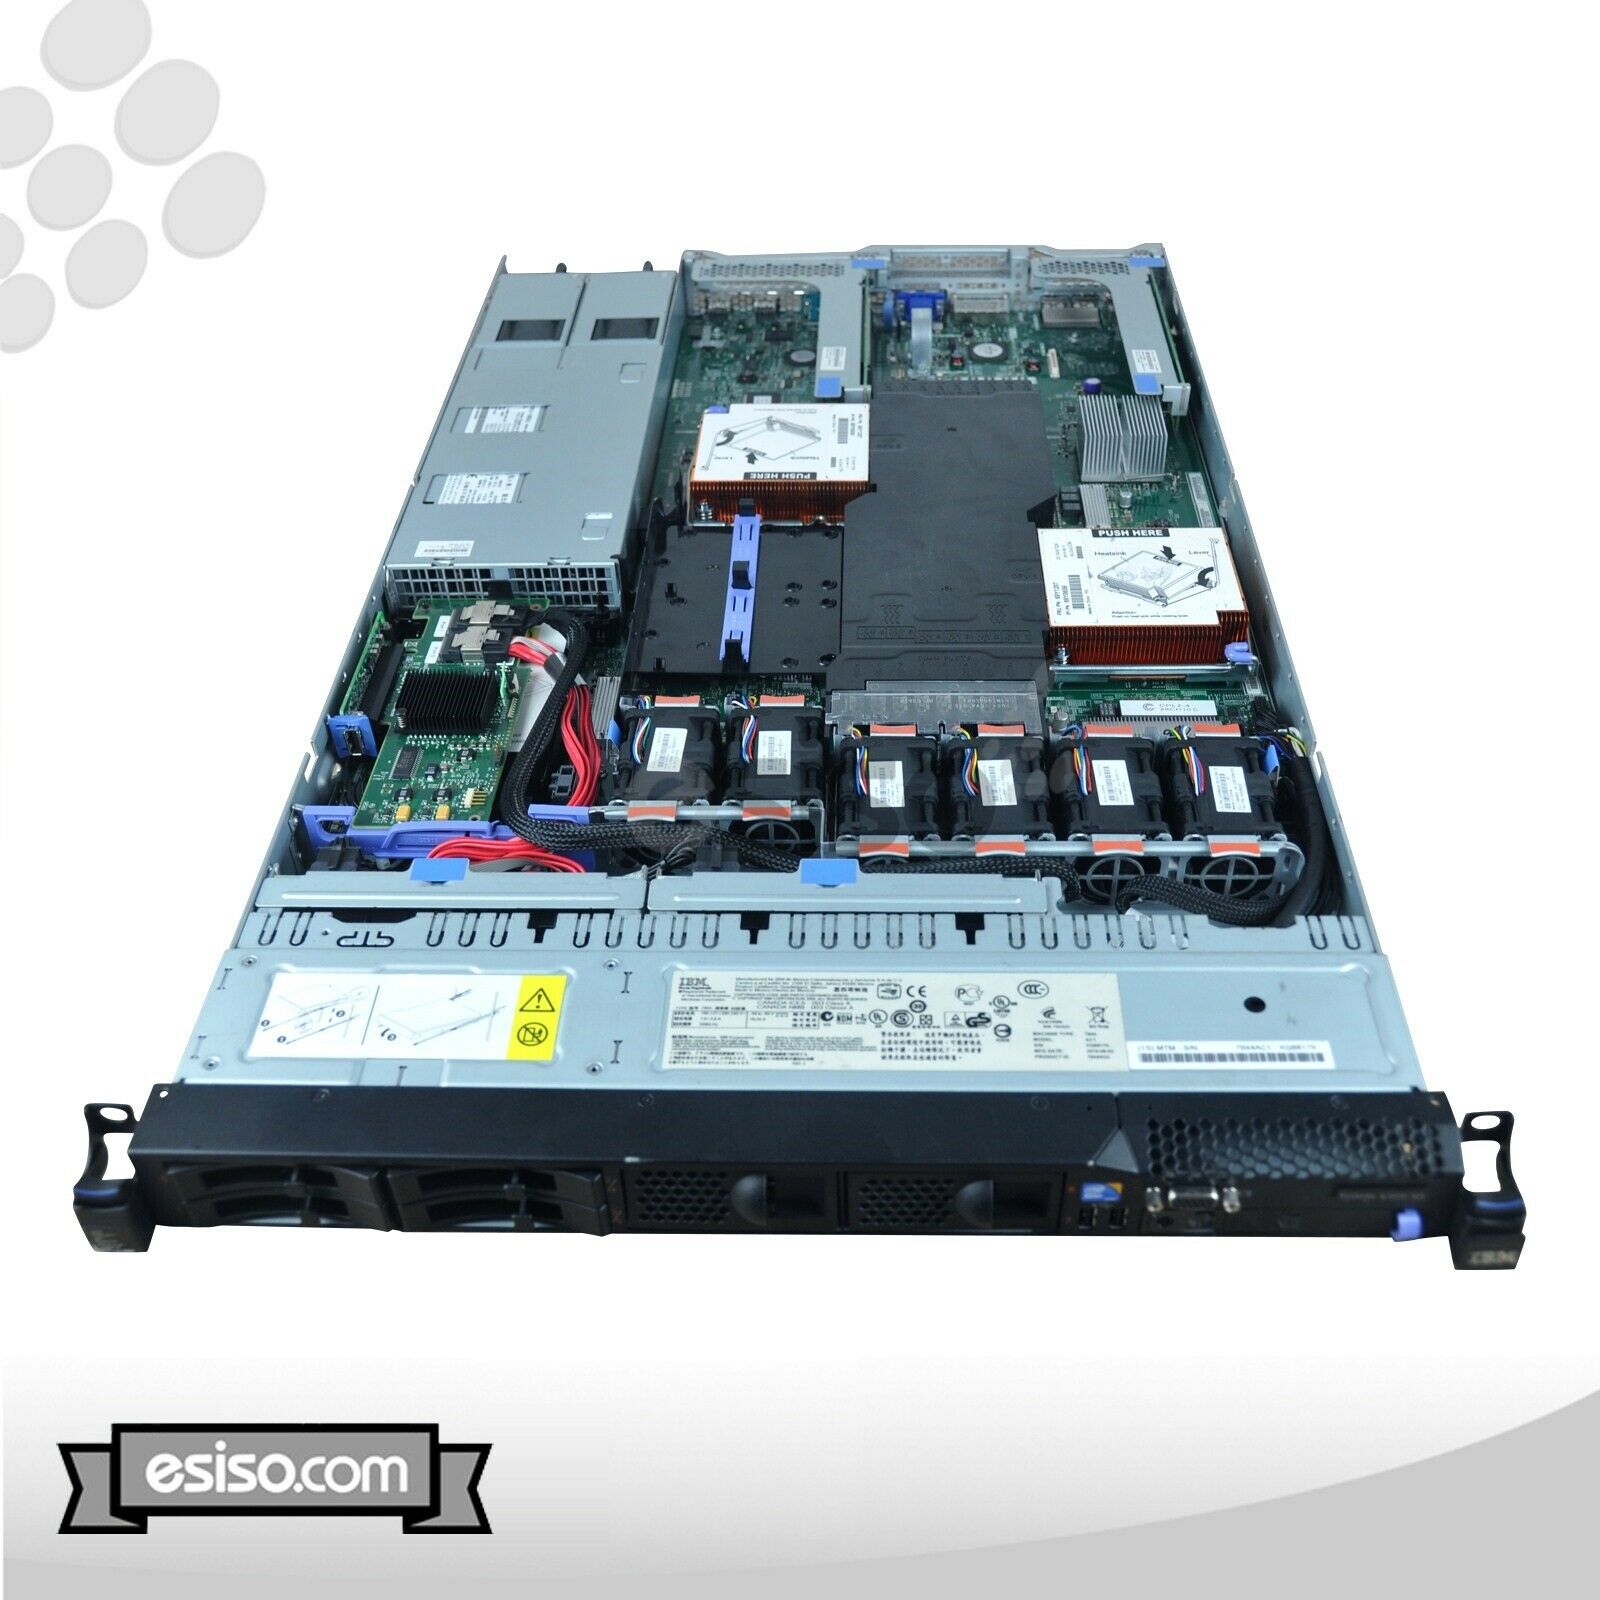 IBM System x3550 M3 7944-AC1 2x SIX CORE L5640 2.26GHz 48GB RAM 4x 900GB 10K SAS